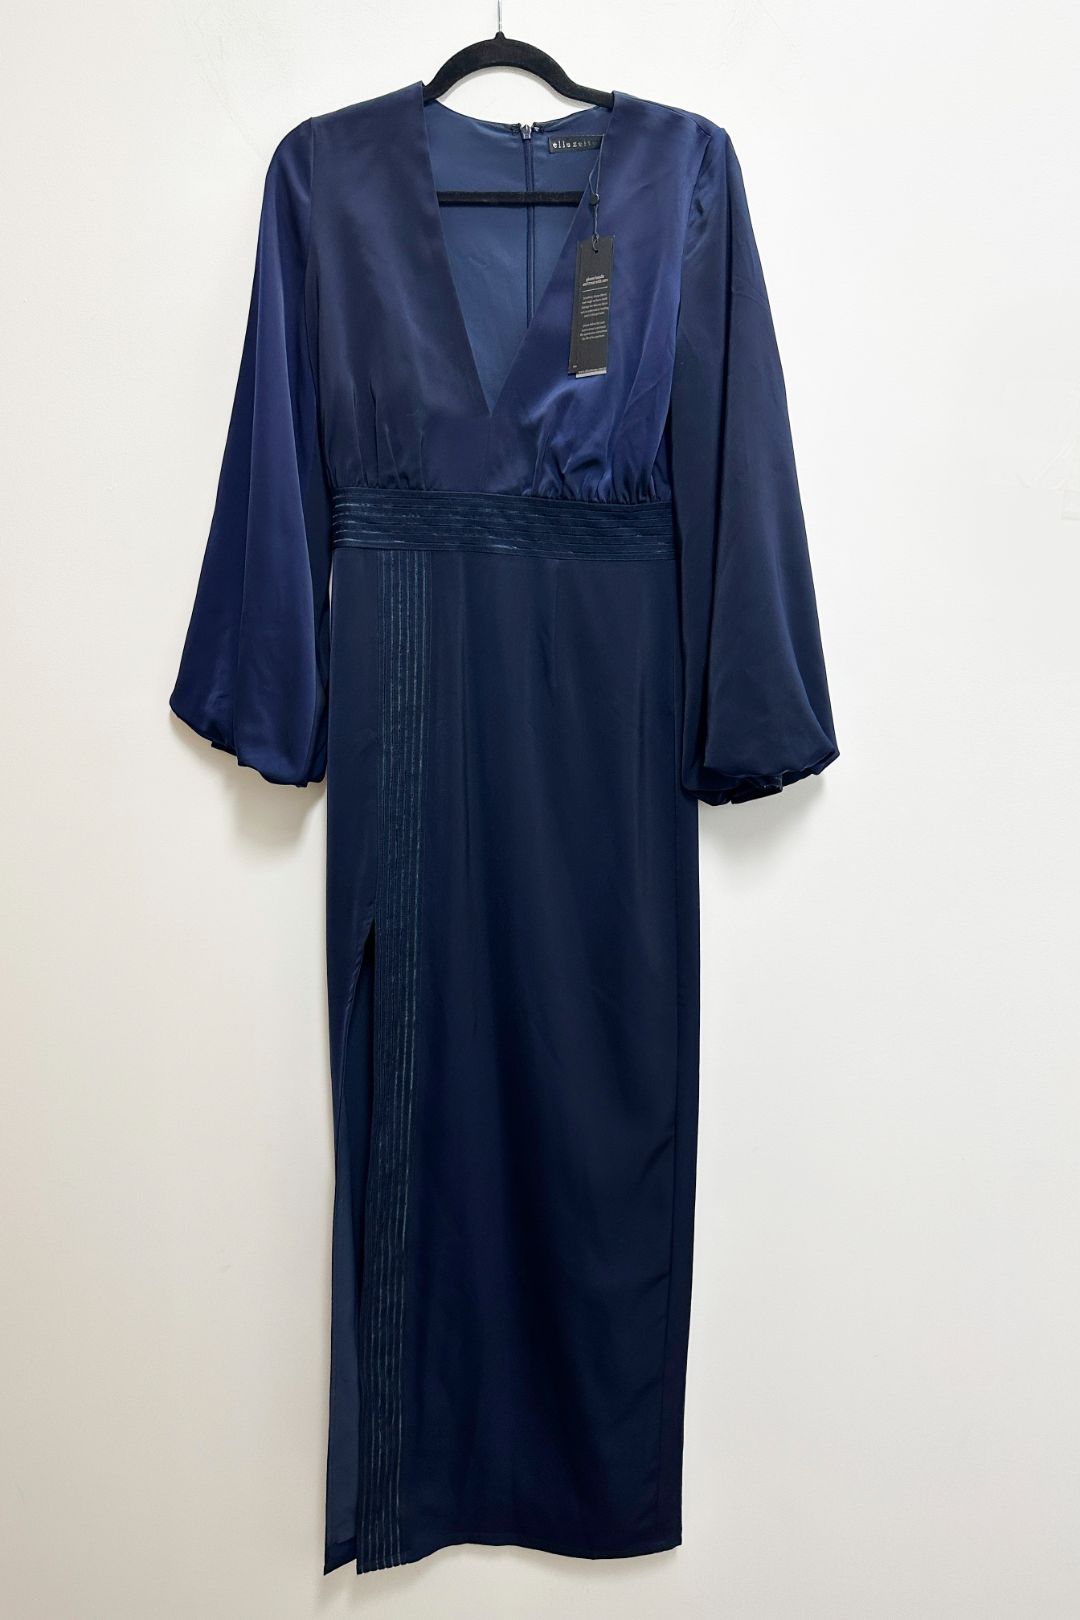 Elle Zeitoune Long Dress With Side Slit in Dark Blue